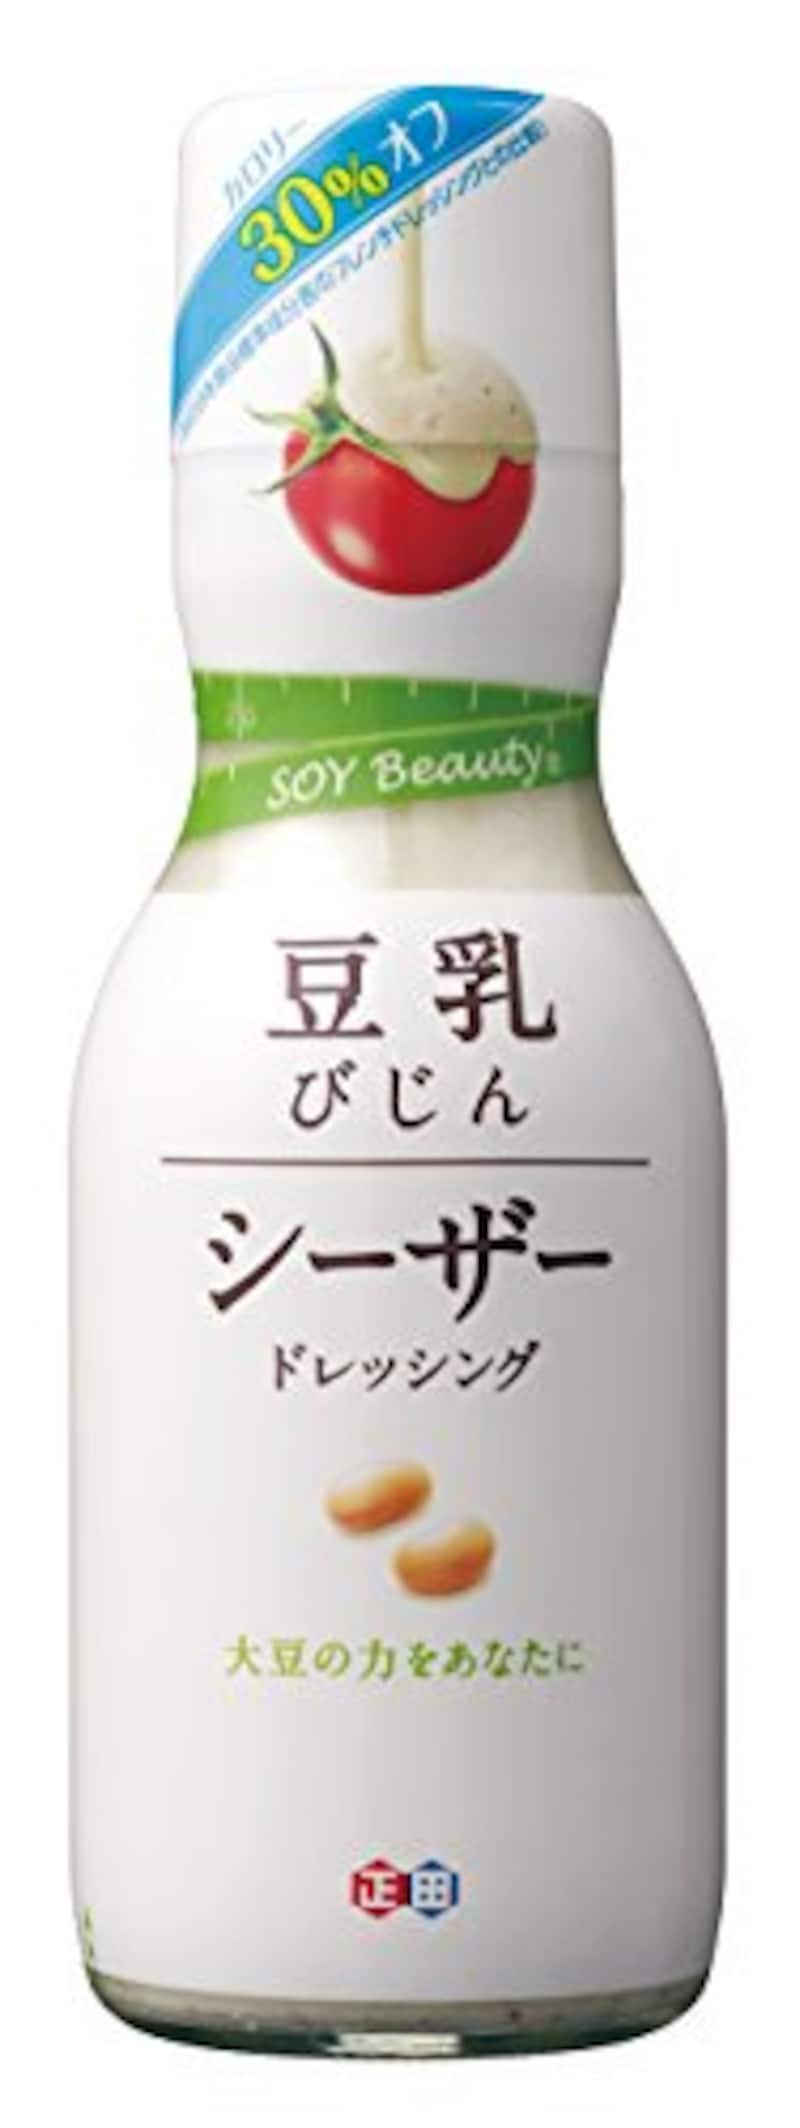 正田醤油,豆乳びじん シーザードレッシング